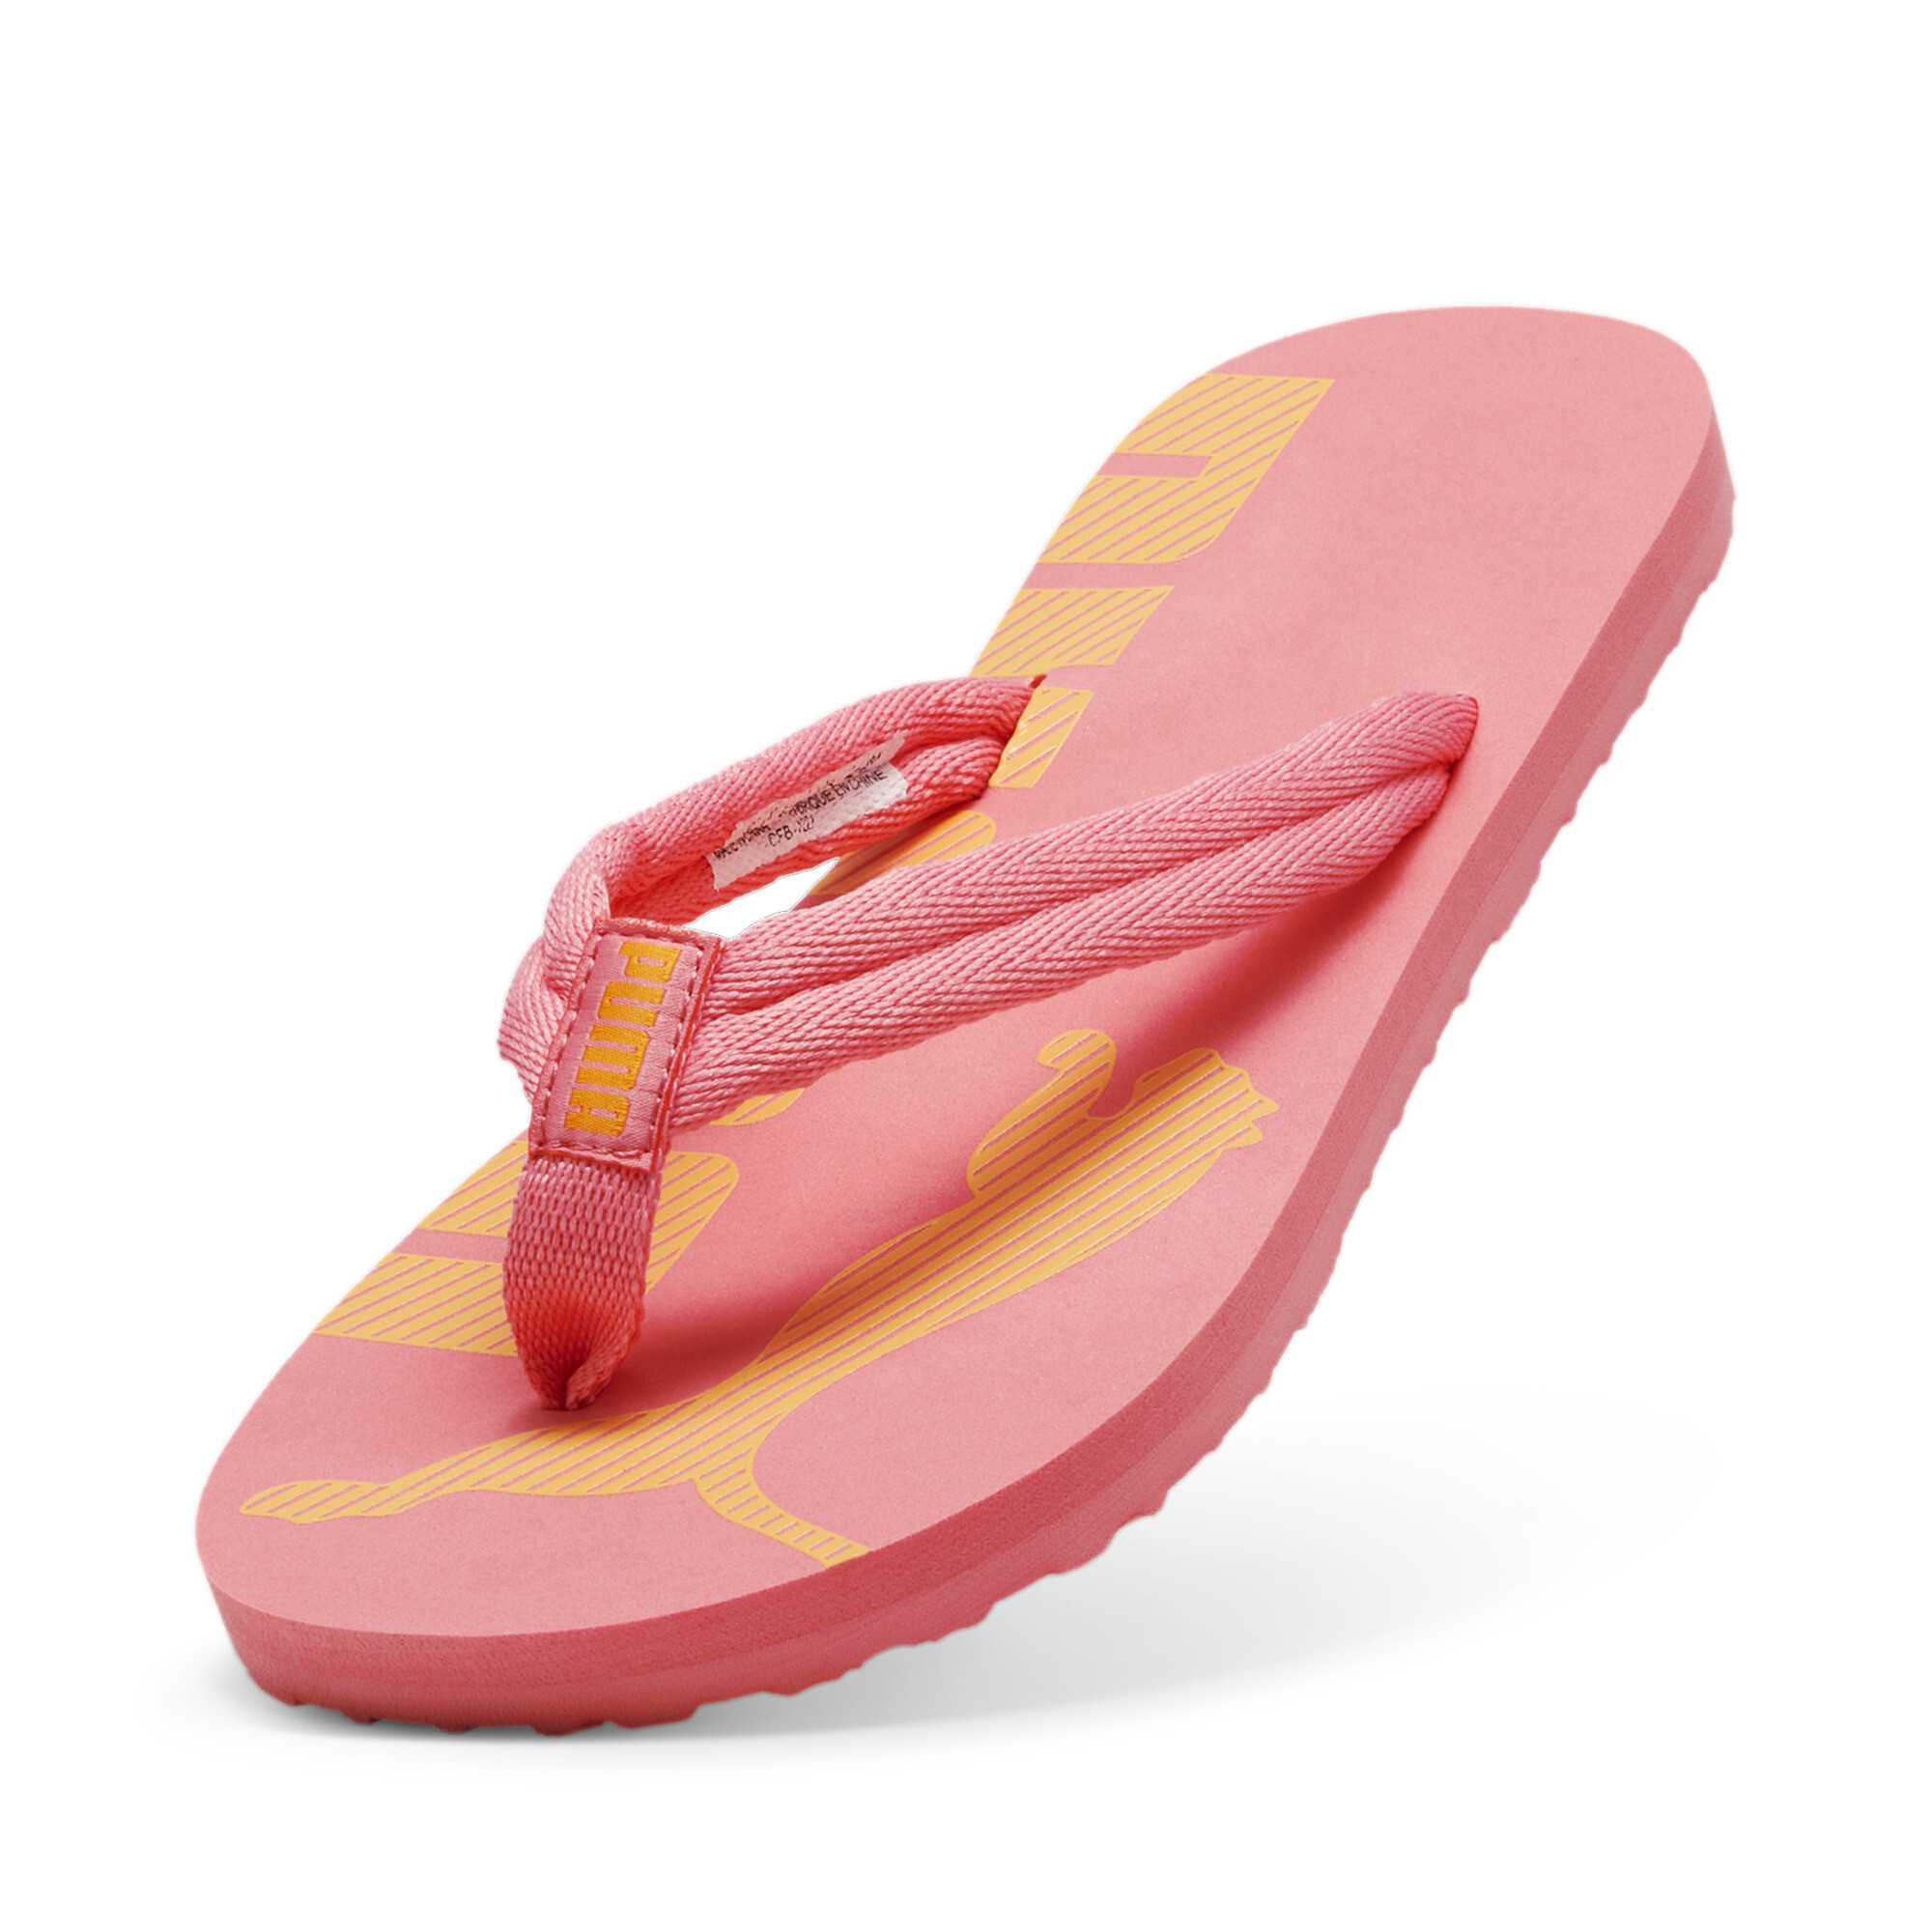 Men's PUMA Epic Flip V2 Sandals In Pink, Size EU 44.5